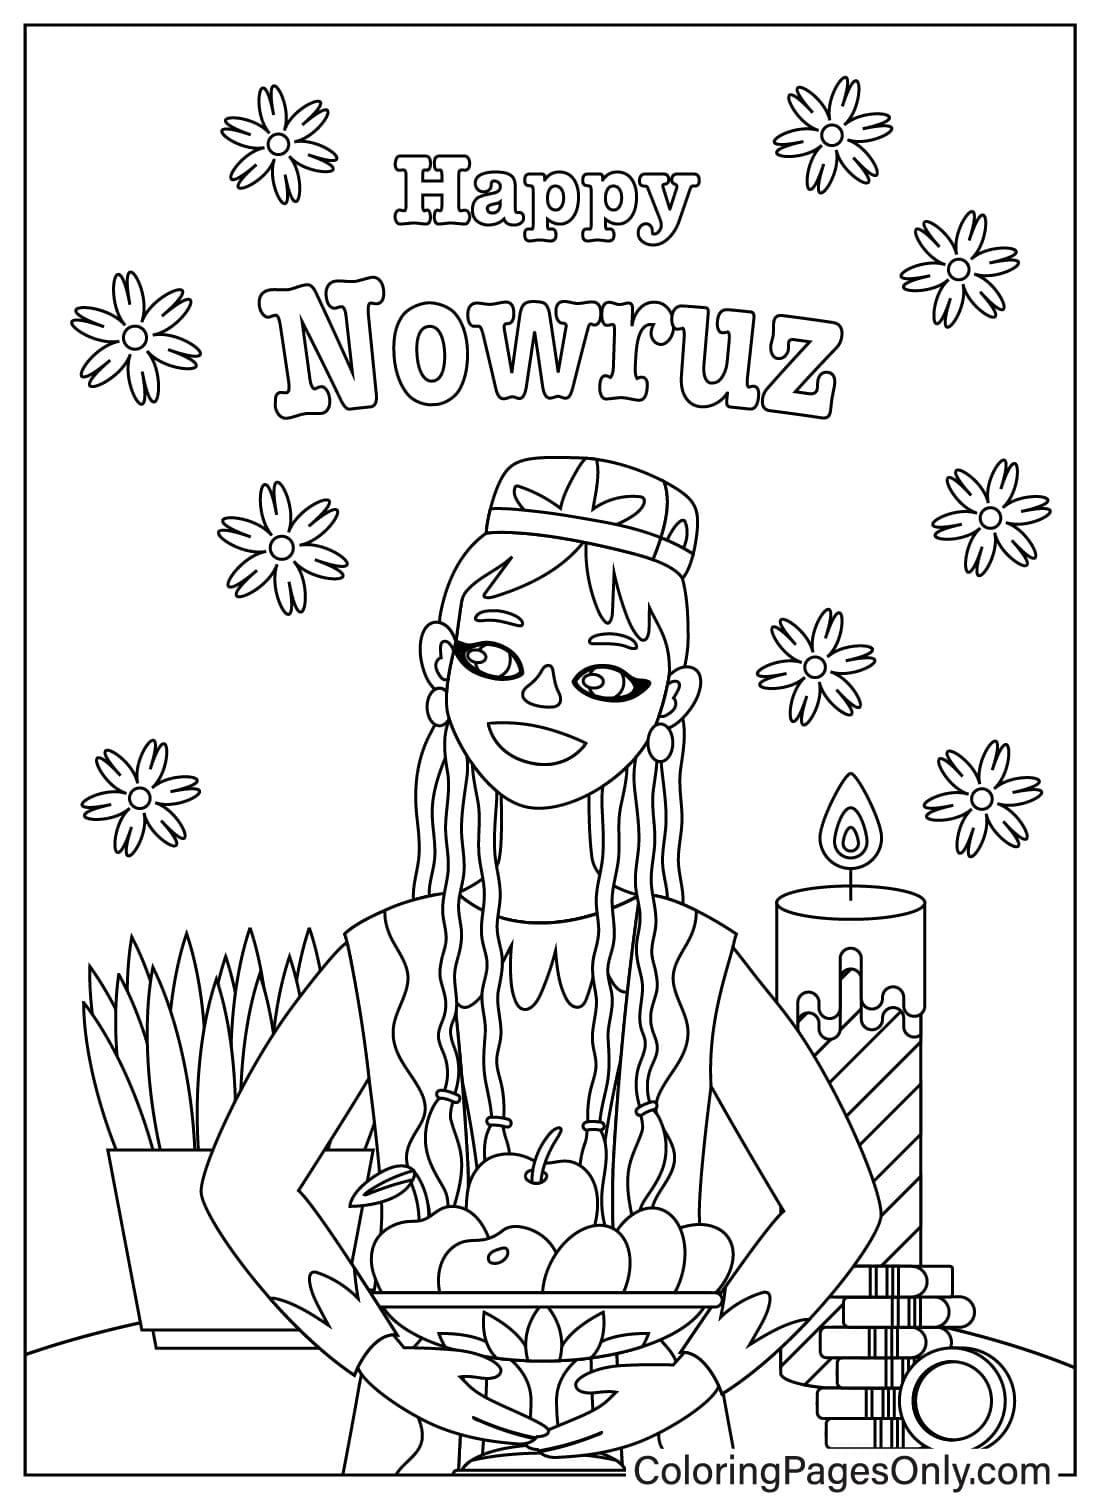 Malvorlage Internationaler Nowruz-Tag vom Internationalen Nowruz-Tag